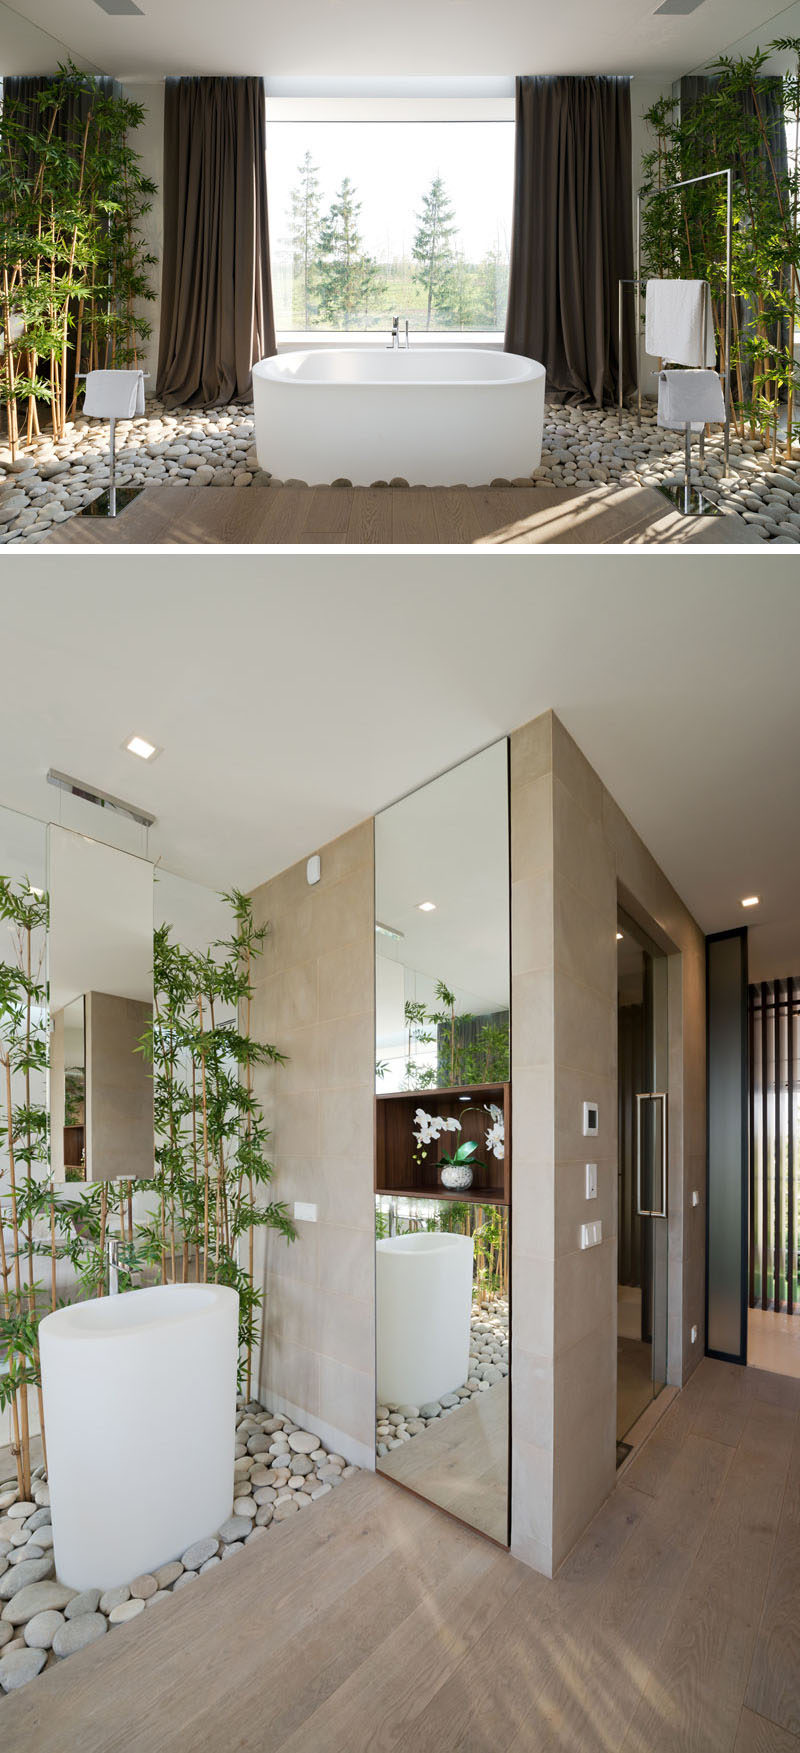 Bathroom Design Idea - Create a Spa-Like Bathroom At Home // Include touches of nature.